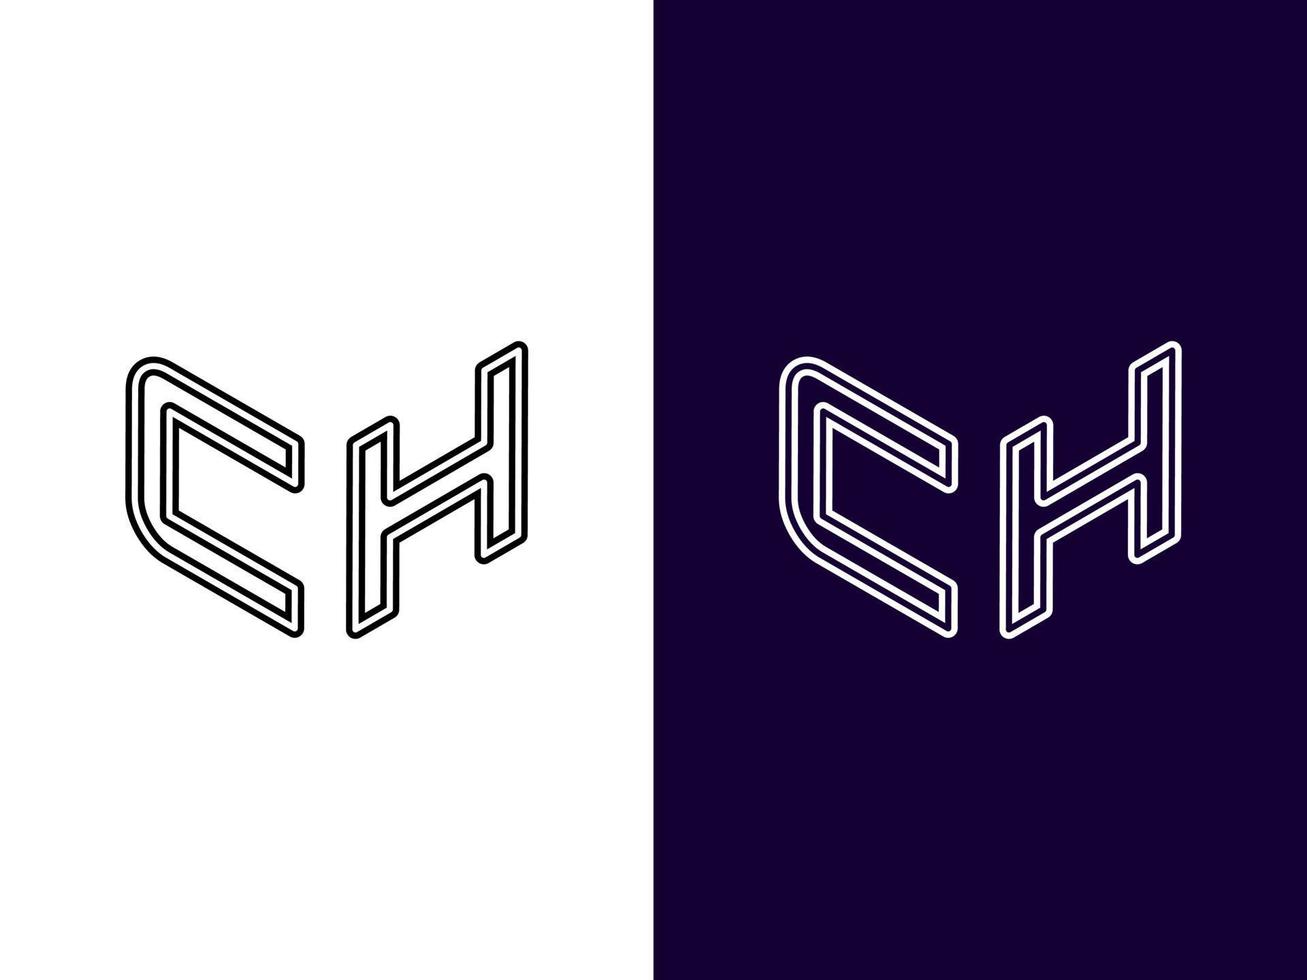 beginletter ch minimalistisch en modern 3D-logo-ontwerp vector